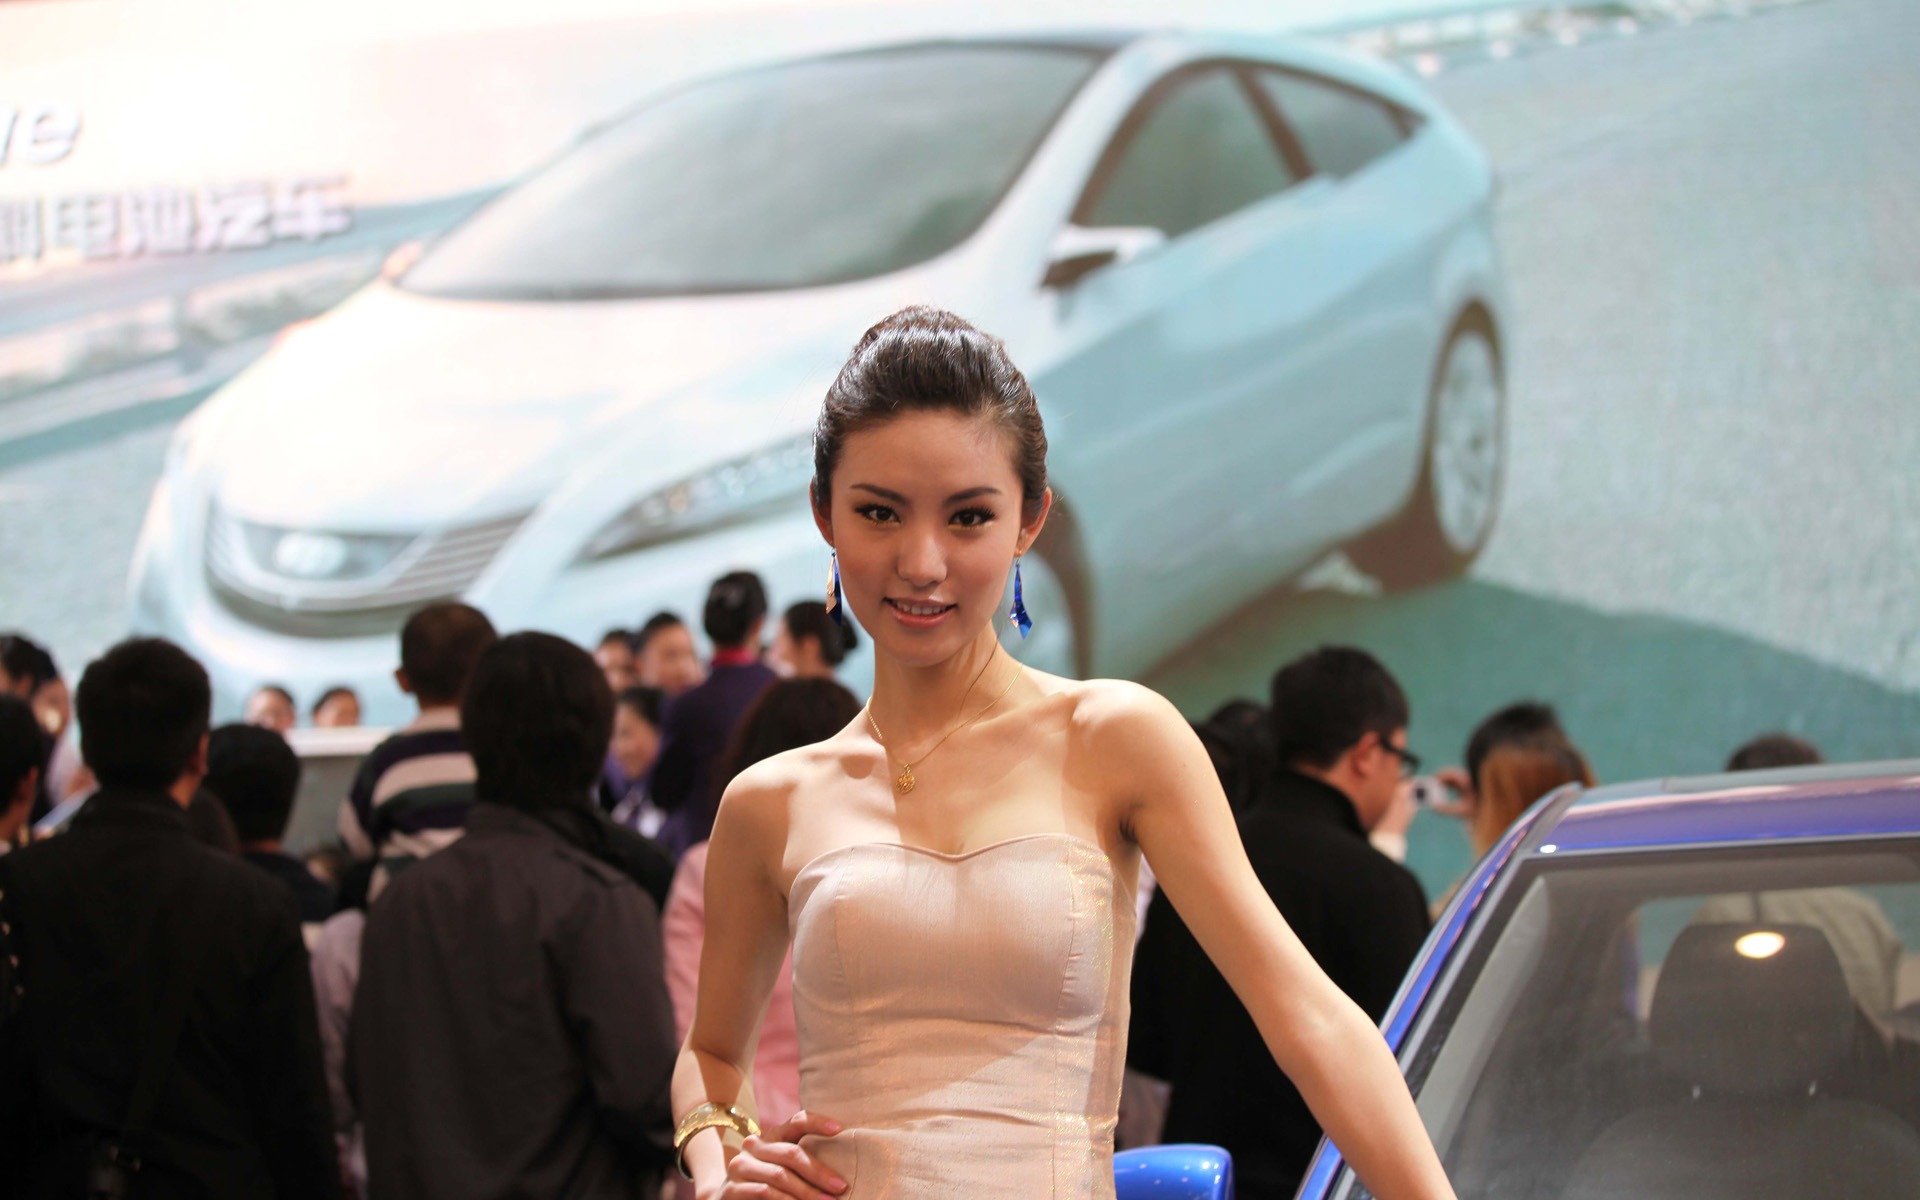 2010 v Pekingu Mezinárodním autosalonu krása (2) (vítr honí mraky práce) #15 - 1920x1200